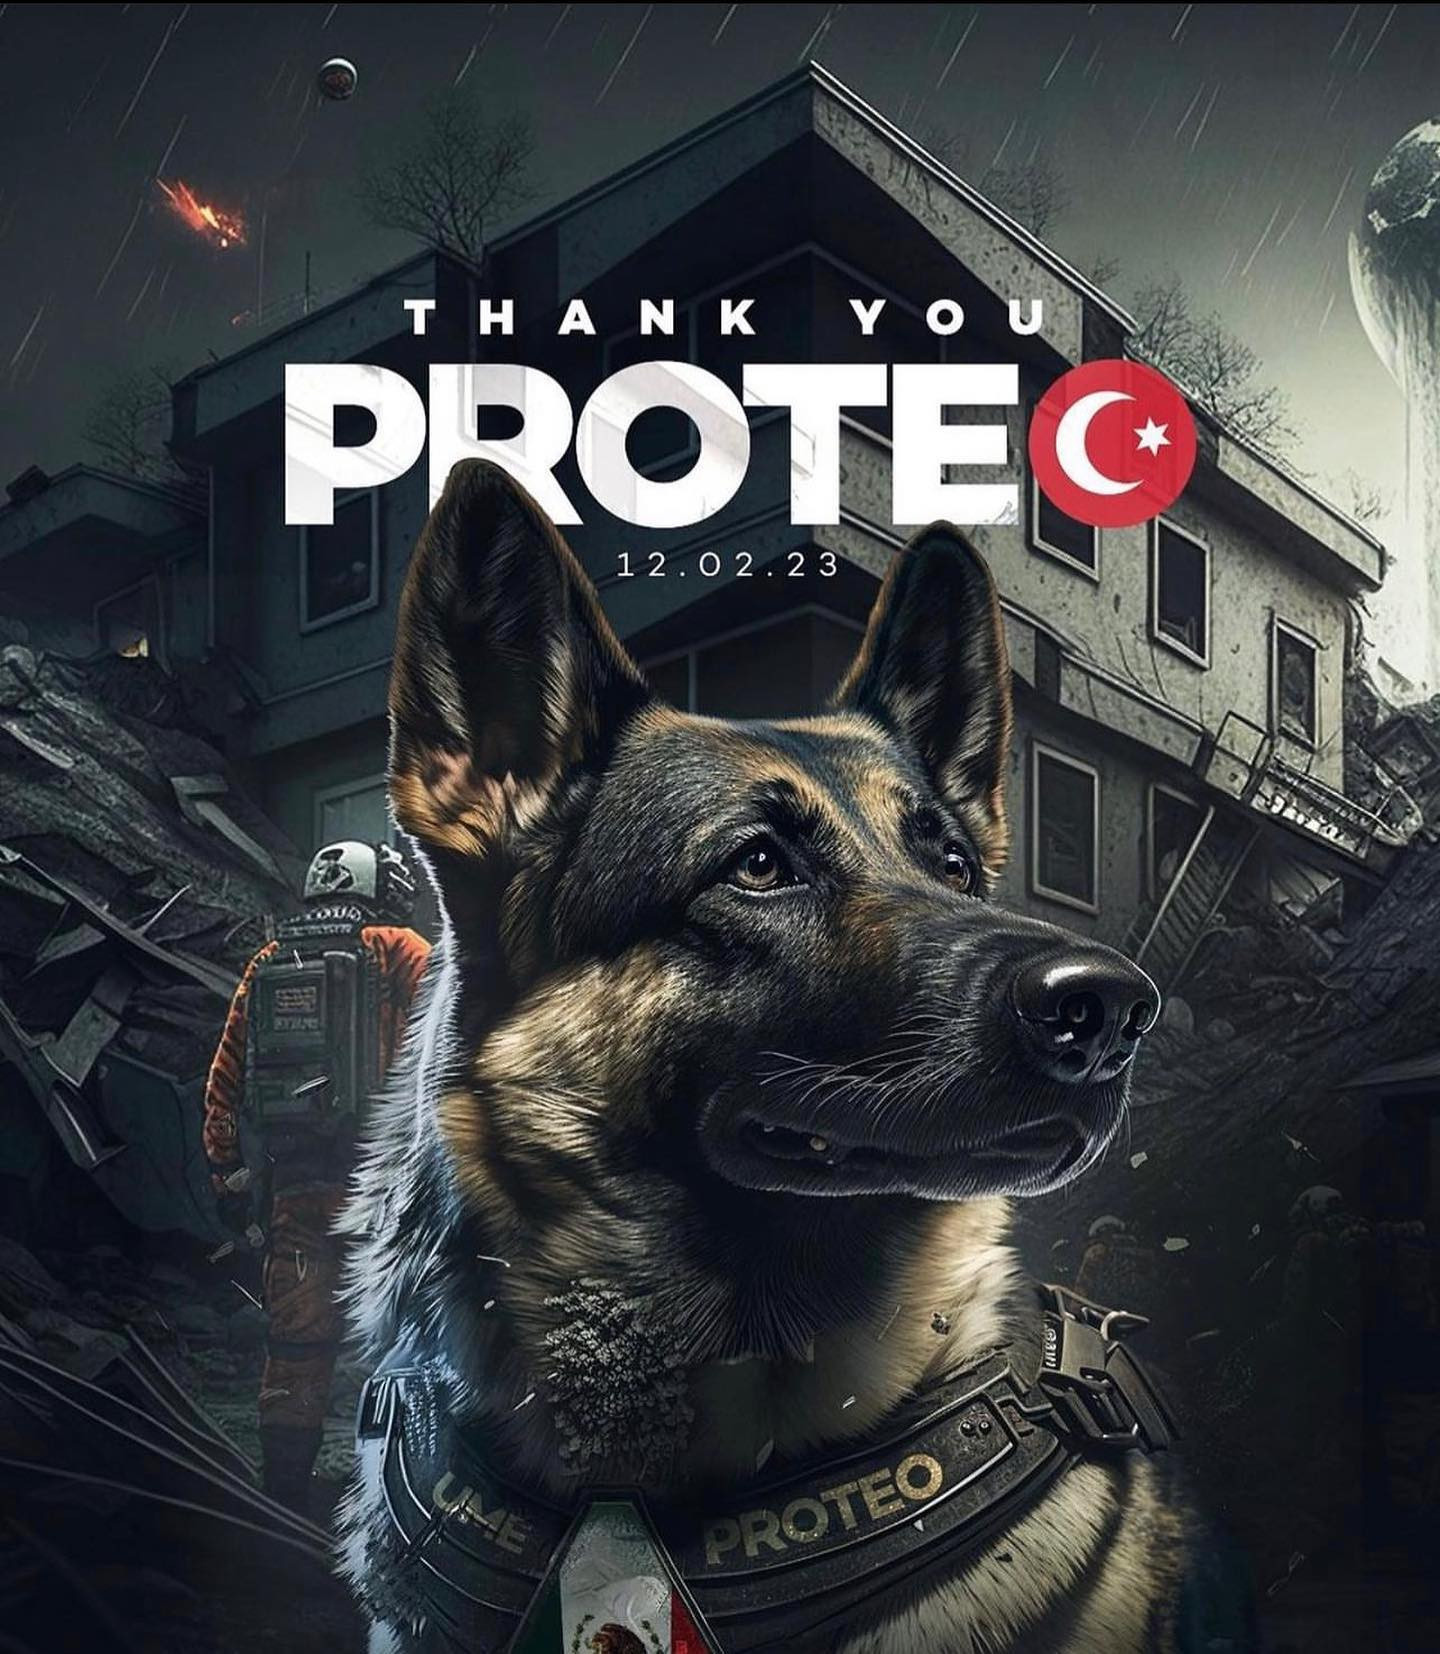 Proteo, Anjing Heroik Asal Meksiko Gugur Terhormat Saat Evakuasi Korban Gempa Turki